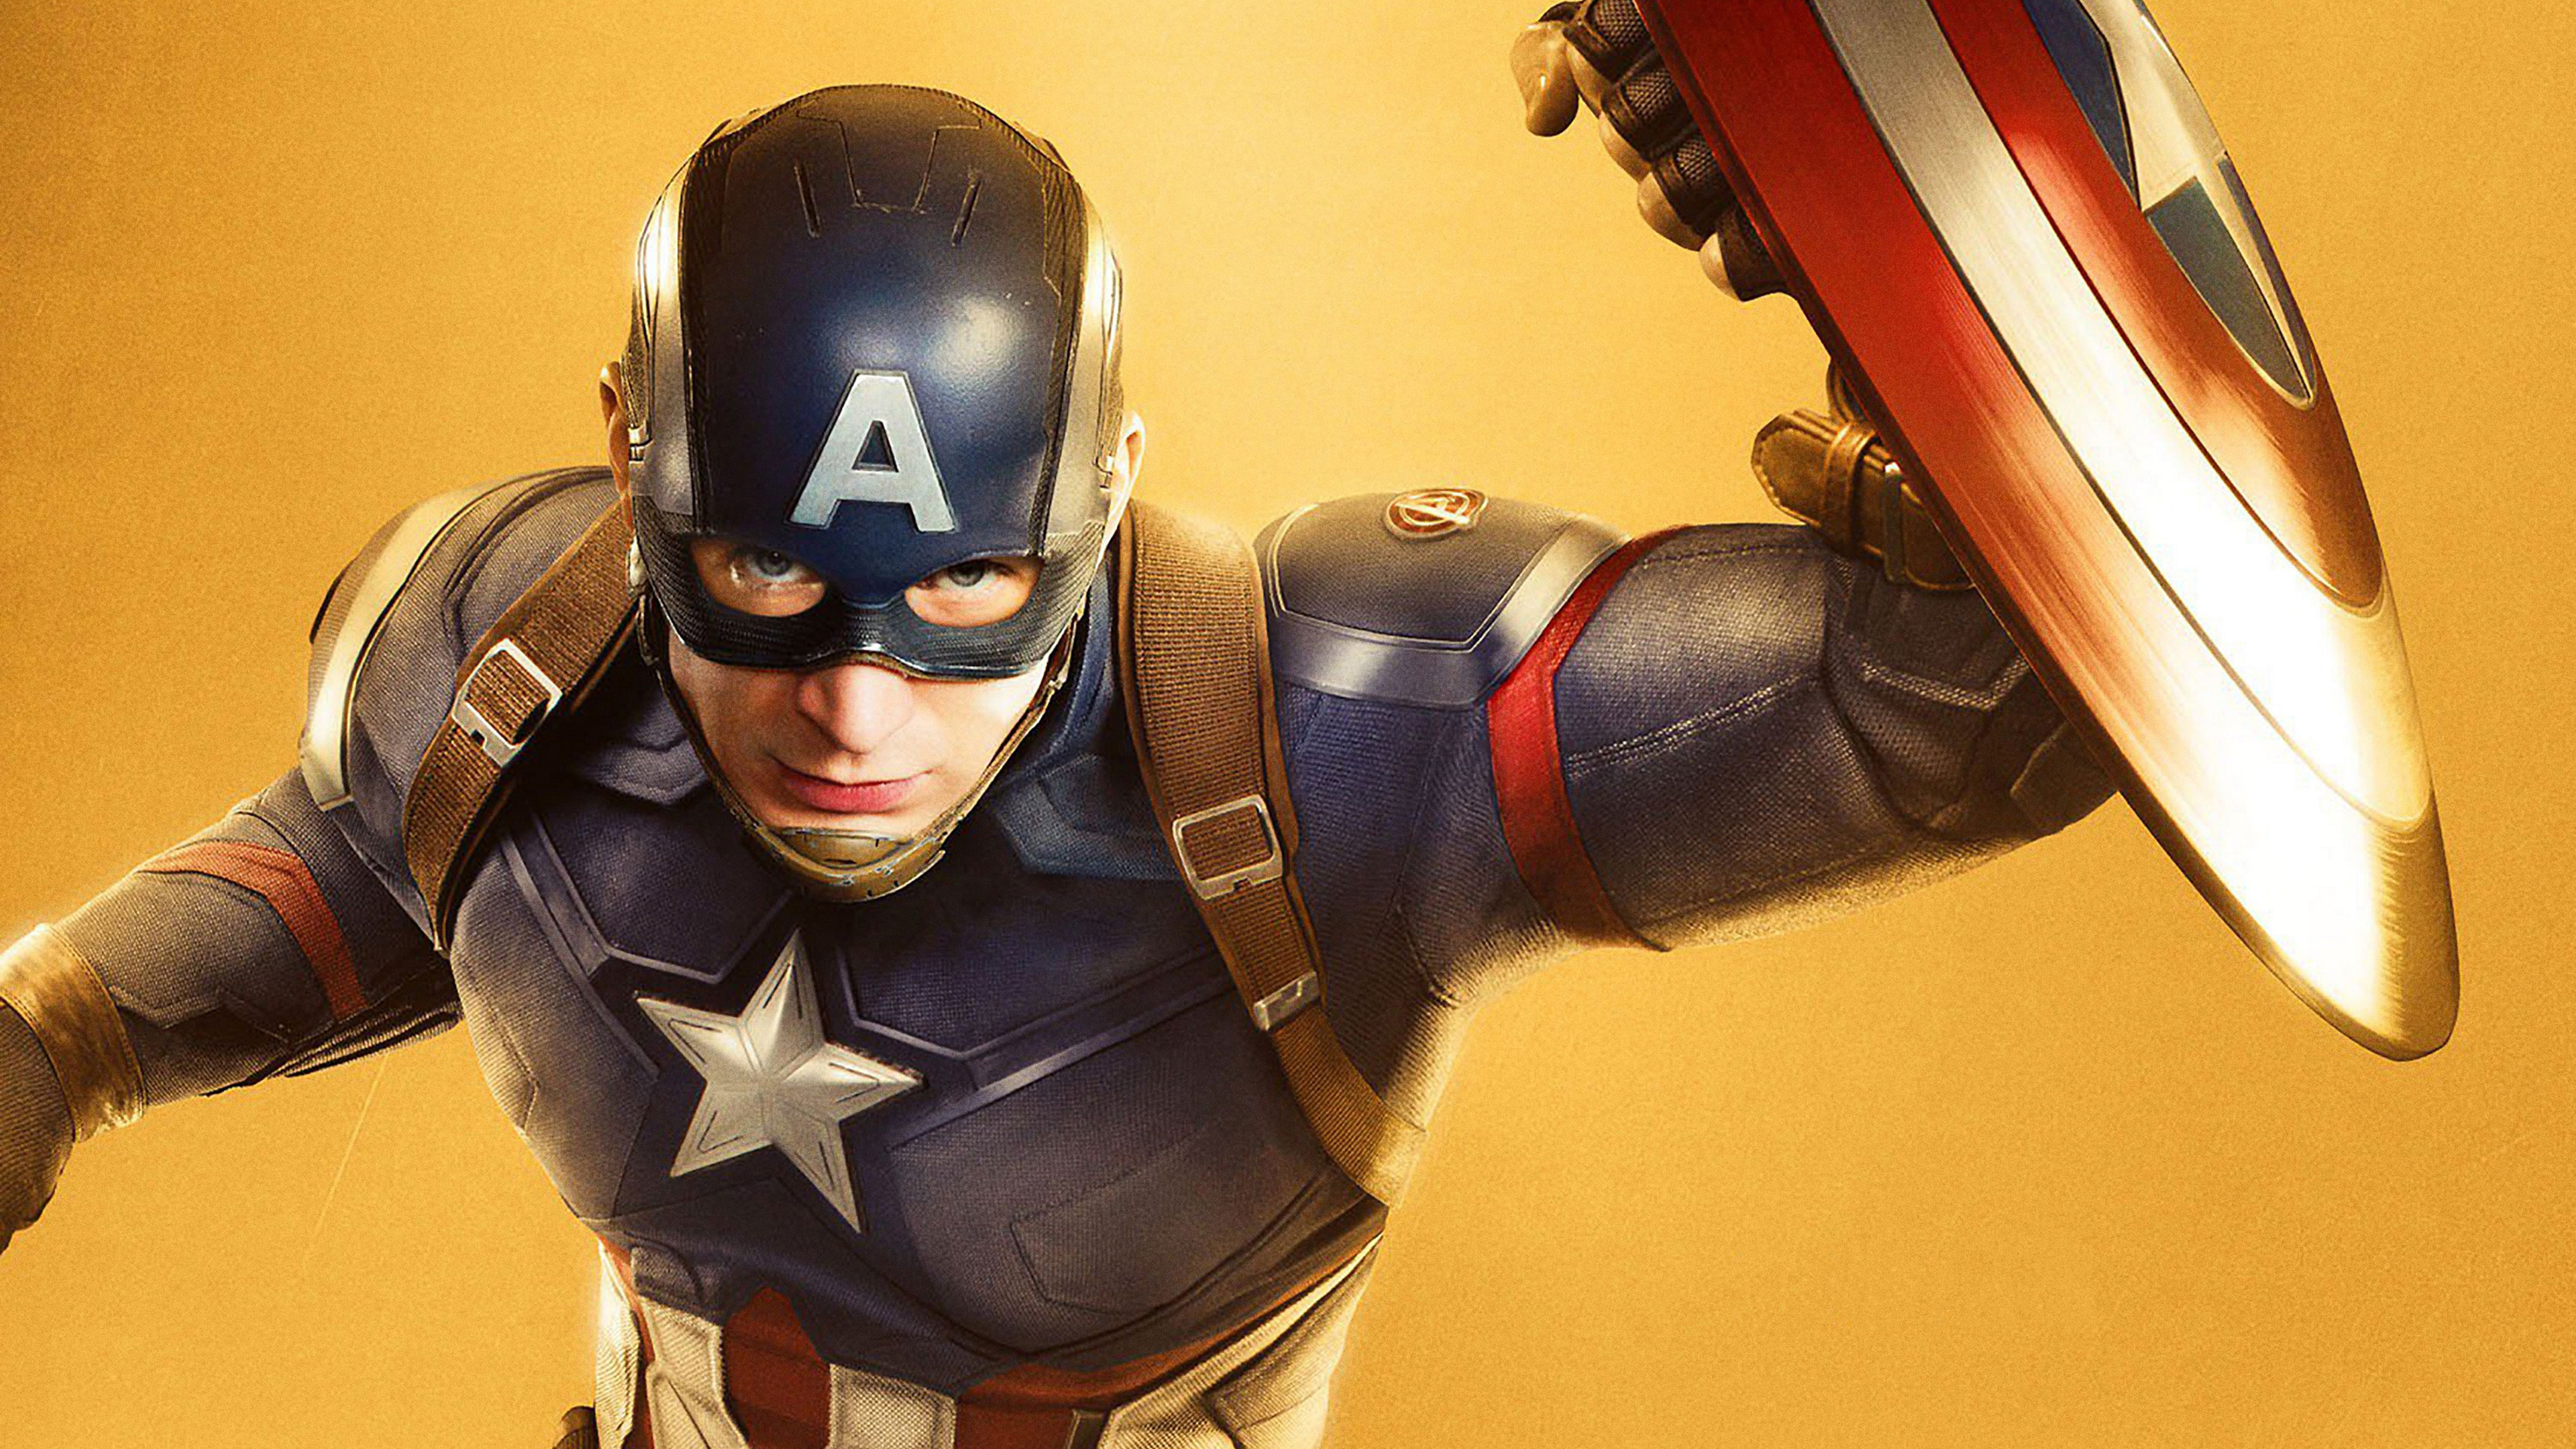 Download mobile wallpaper Captain America, Chris Evans, Movie, The Avengers, Steve Rogers, Avengers: Infinity War for free.